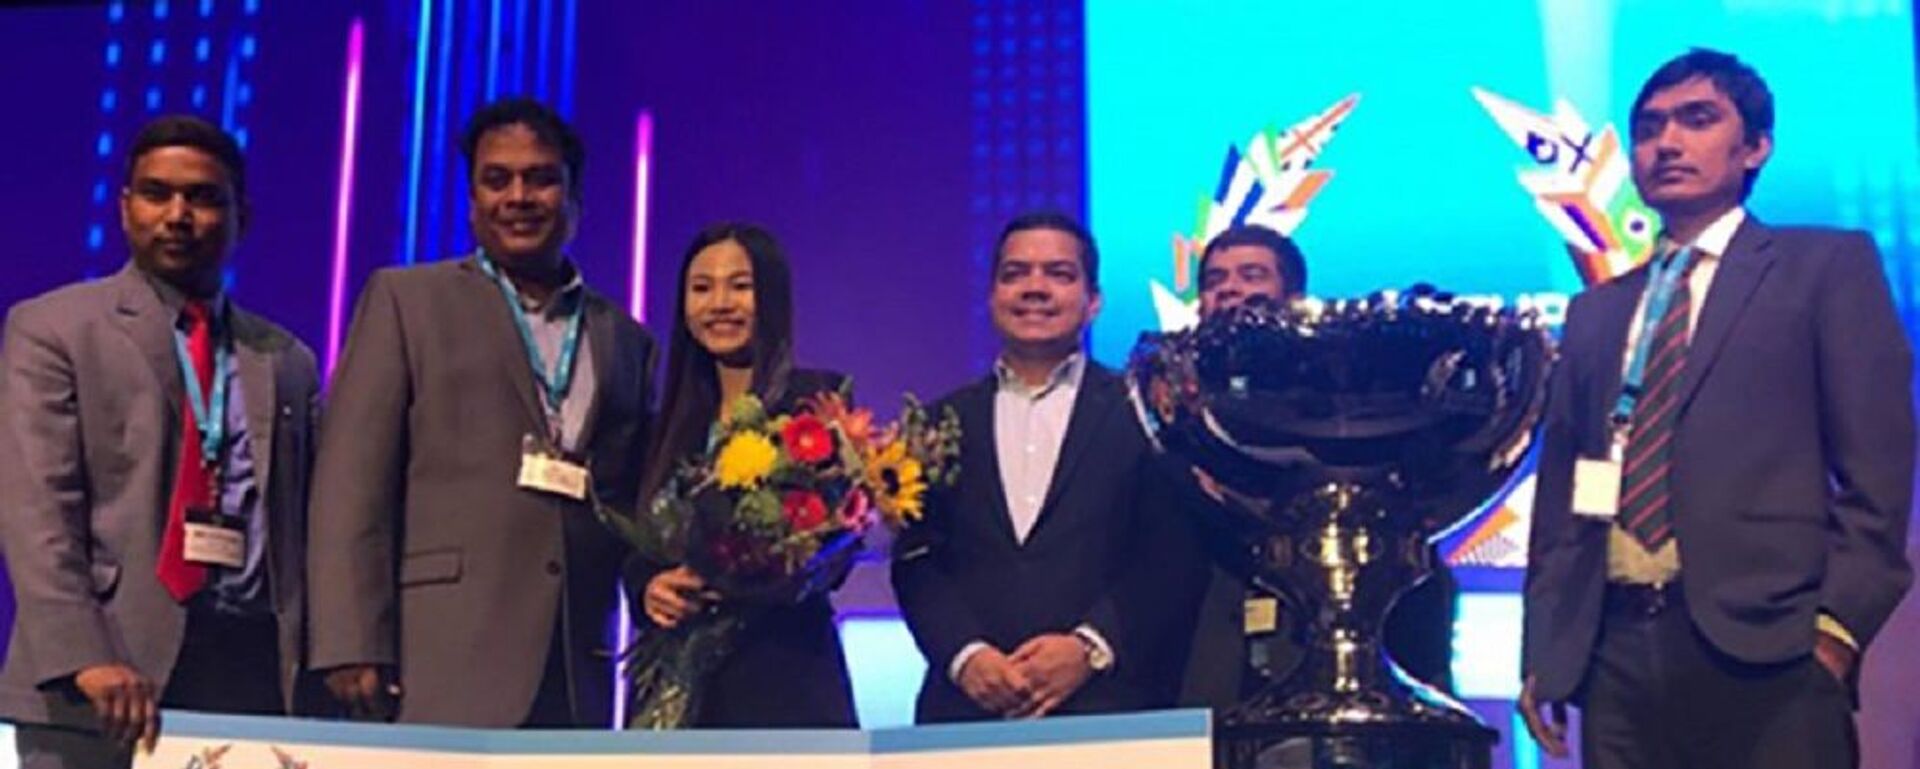 Abivin chiến thắng giải thưởng 1 triệu USD tại Startup World Cup 2019 - Sputnik Việt Nam, 1920, 19.05.2019